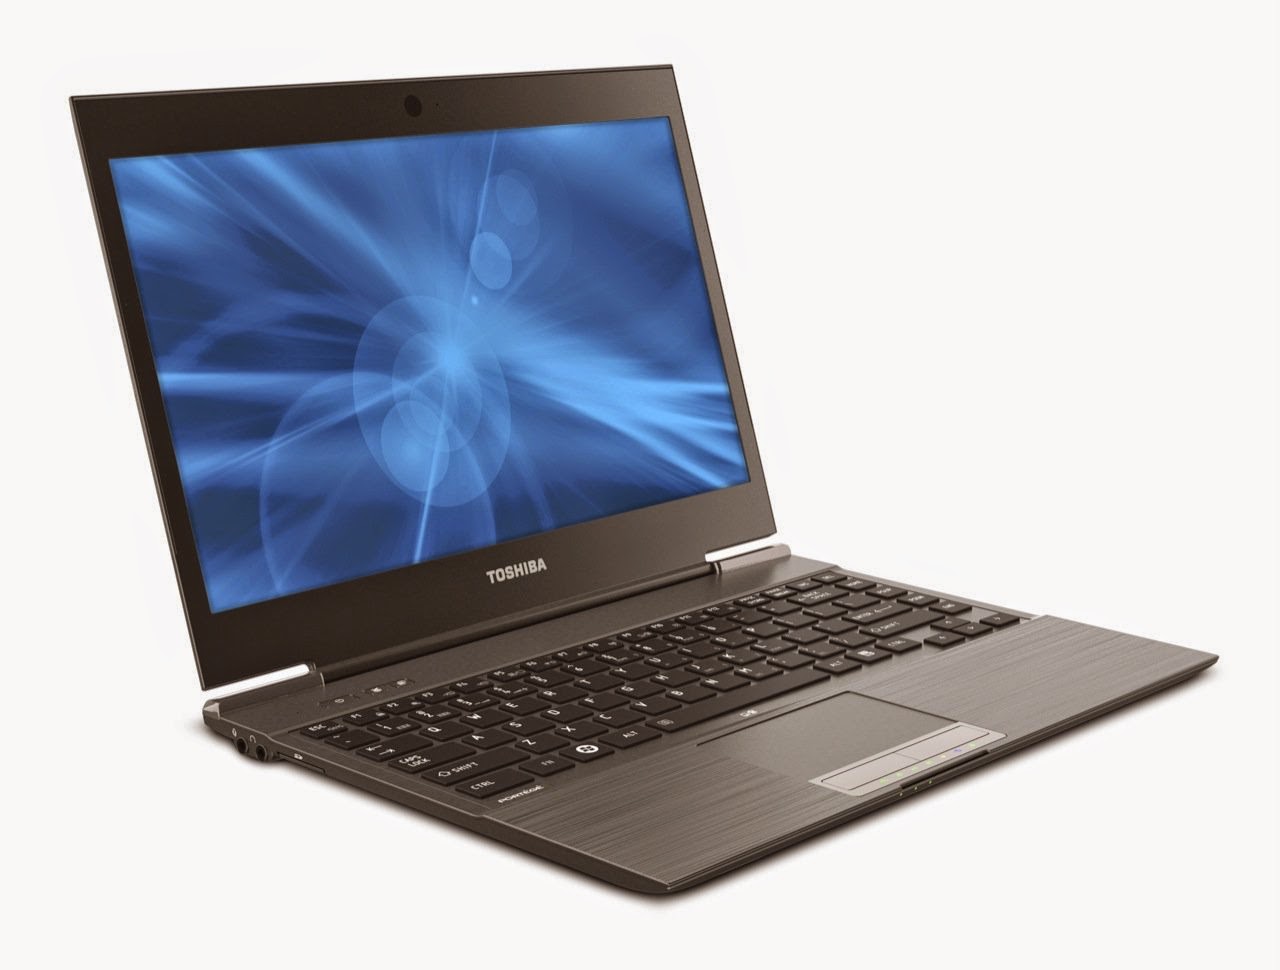 Harga Laptop Terbaru Toshiba Desember 2014